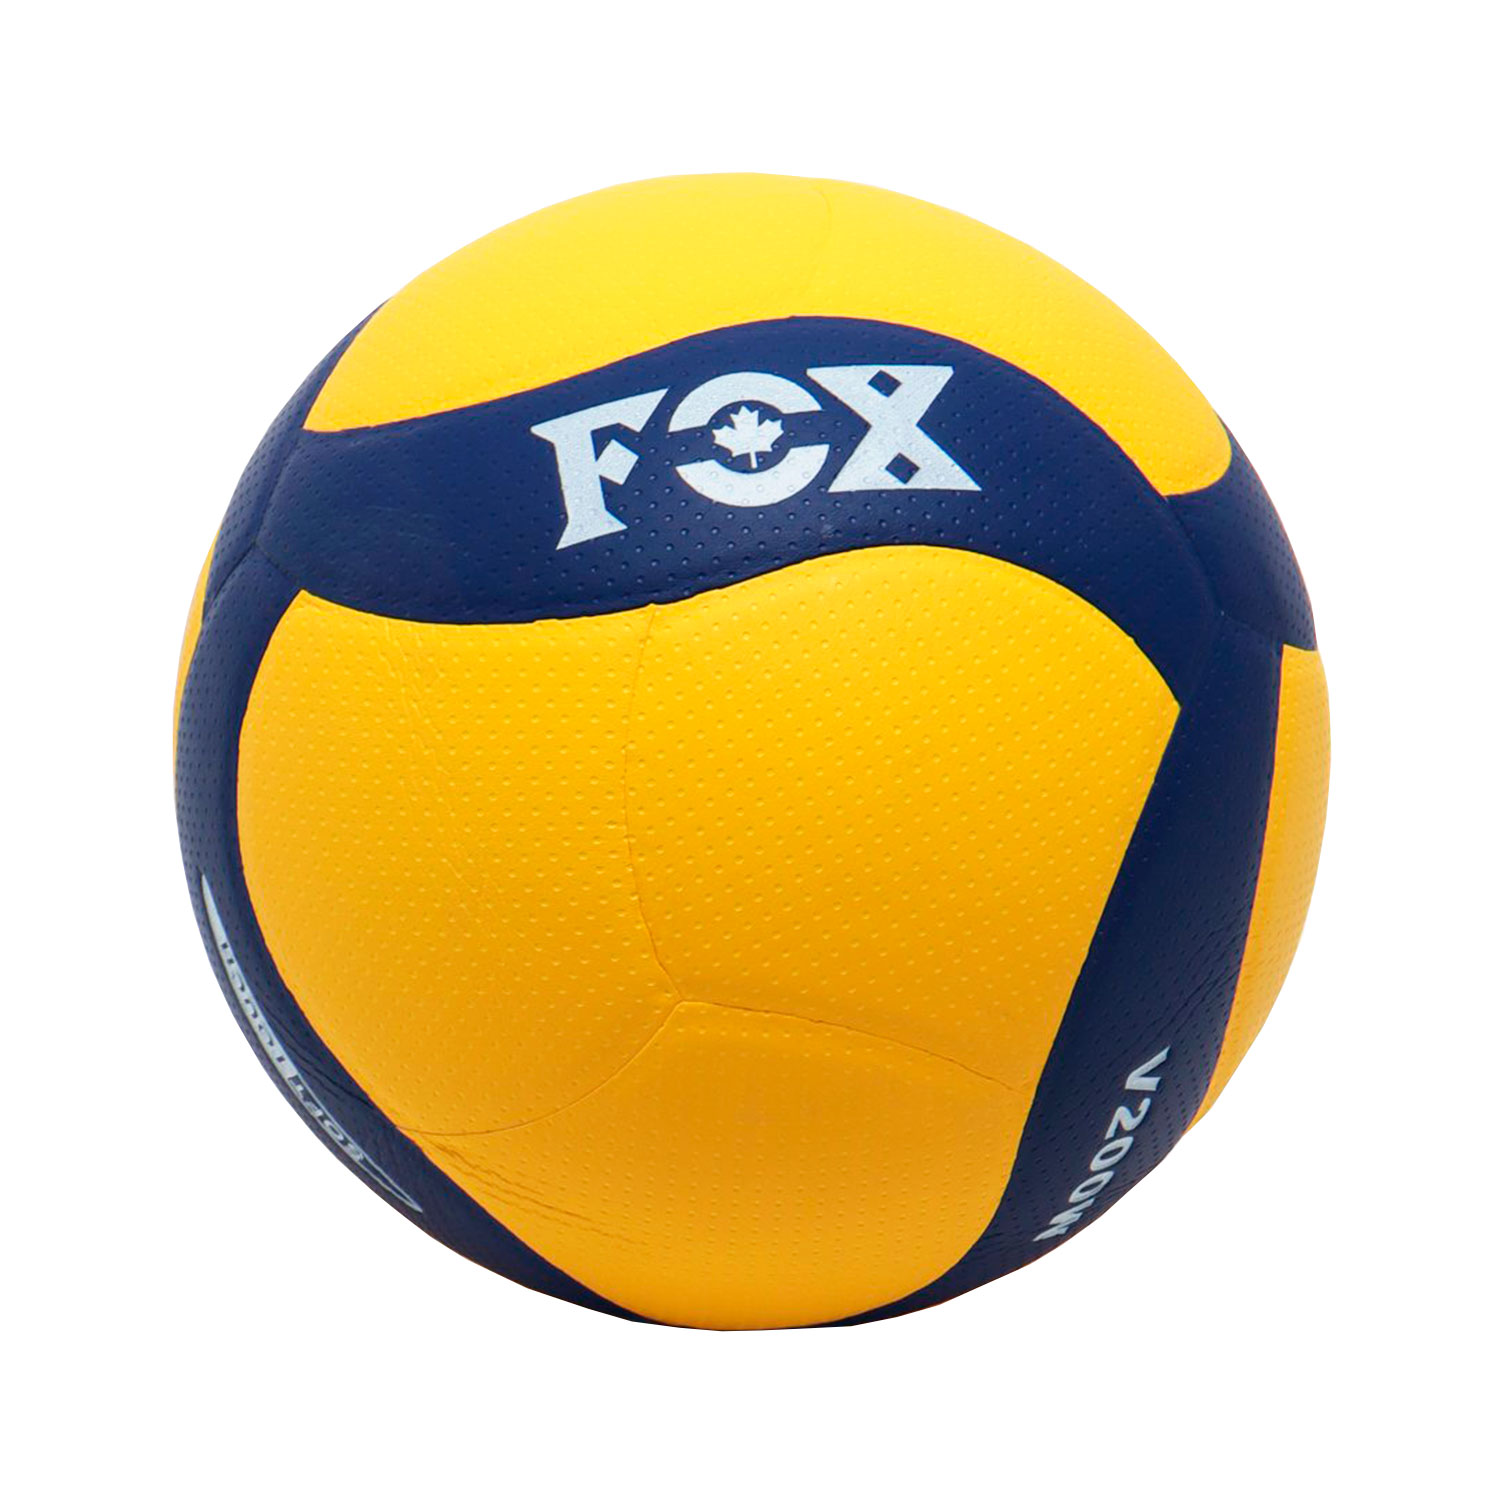 Волейбольный мяч Fox V200W, купить волейбольный мяч